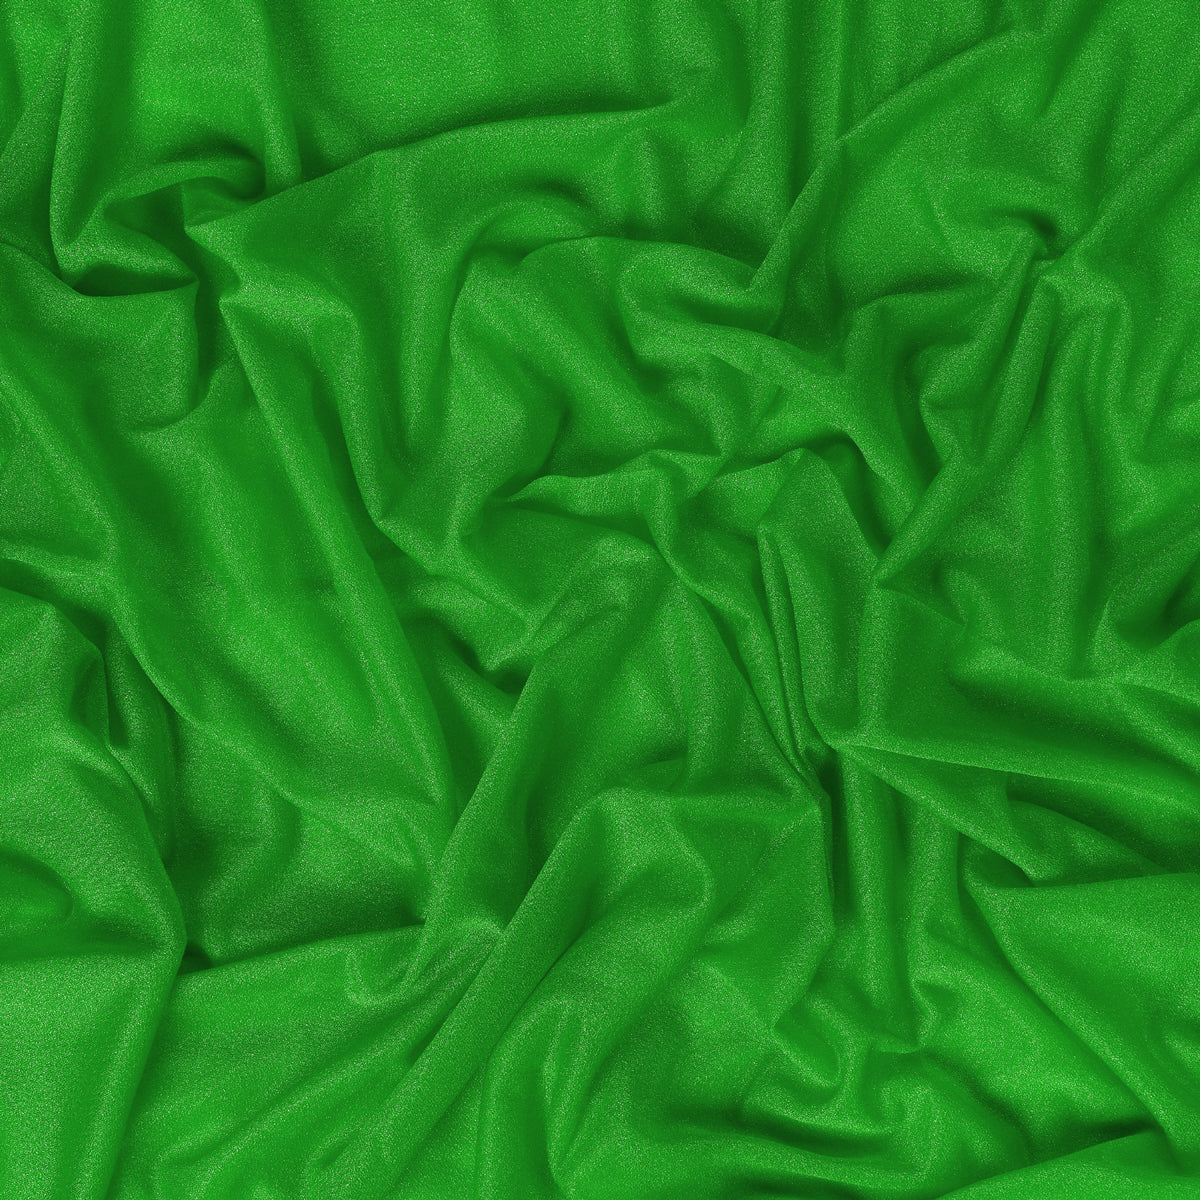 Green,97d00ce6-7897-4aee-9fdd-7a13c98bec40